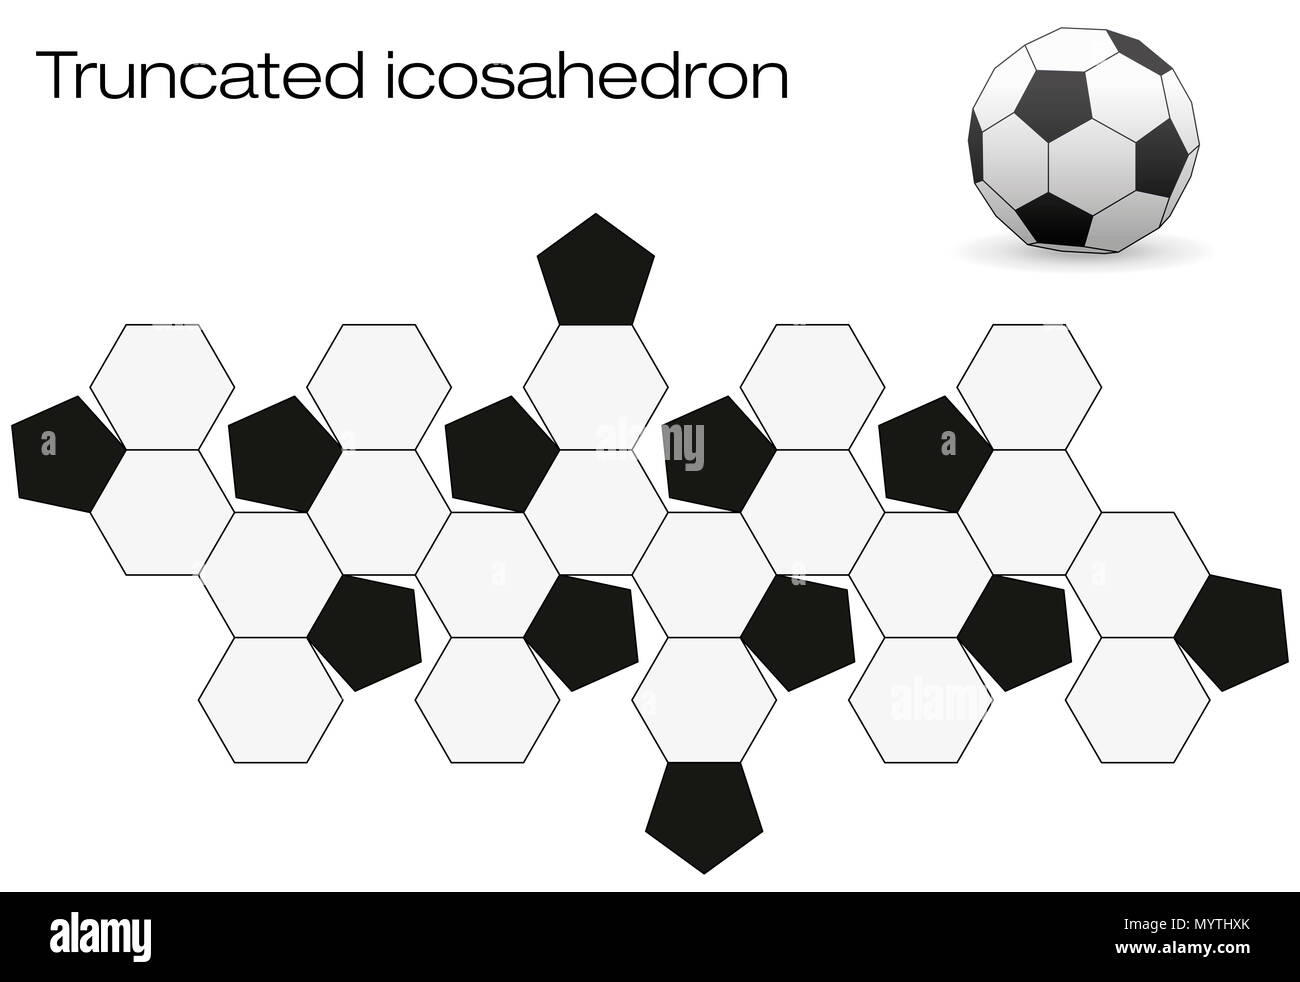 È dispiegata pallone da calcio superficie. Poliedro geometrico chiamato troncato icosaedro, una coclea solido con dodici nero e venti facce bianche. Foto Stock